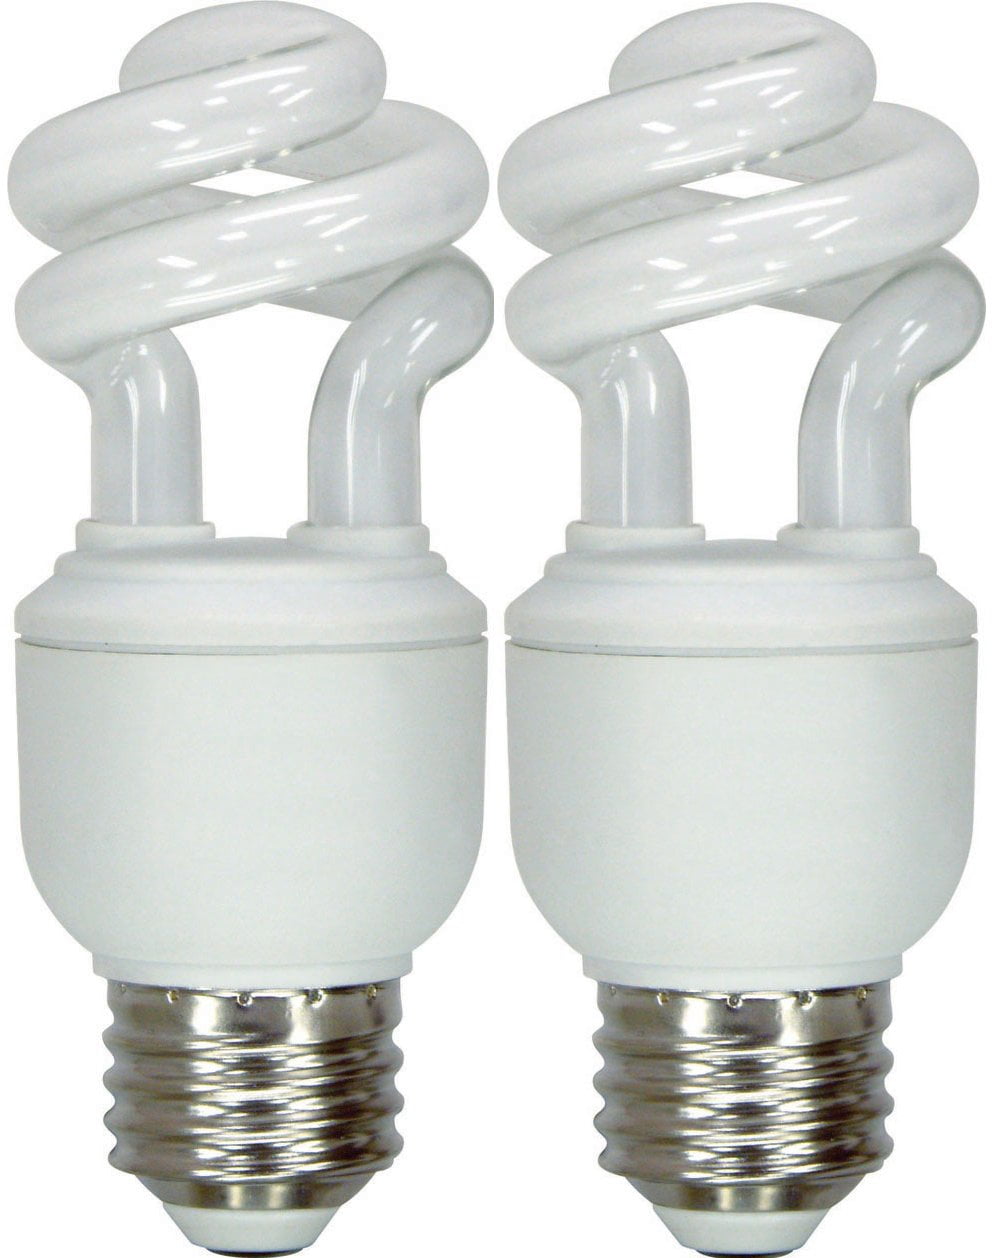 Energy Smart Compact Fluorescent Spiral Light Bulb, 10 Watt, Soft Whit